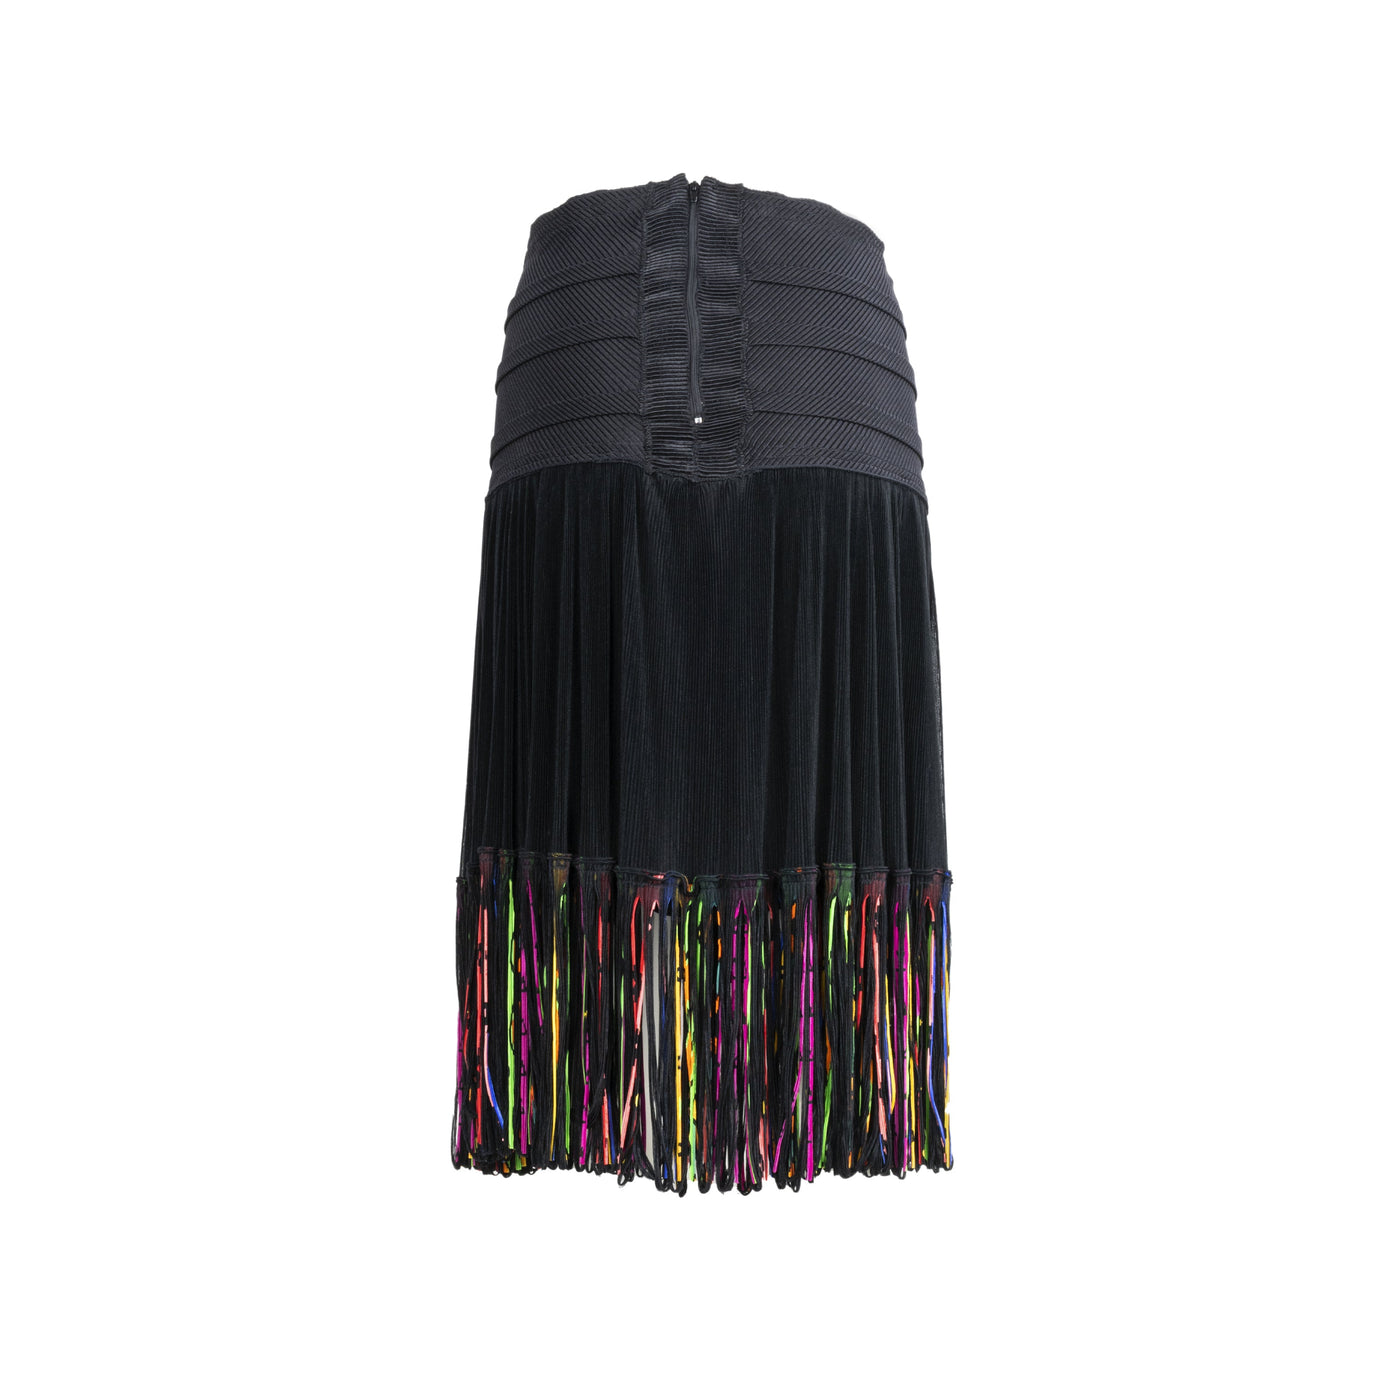 Marisa Padovan black skirt multicoloured fringes pre-owned